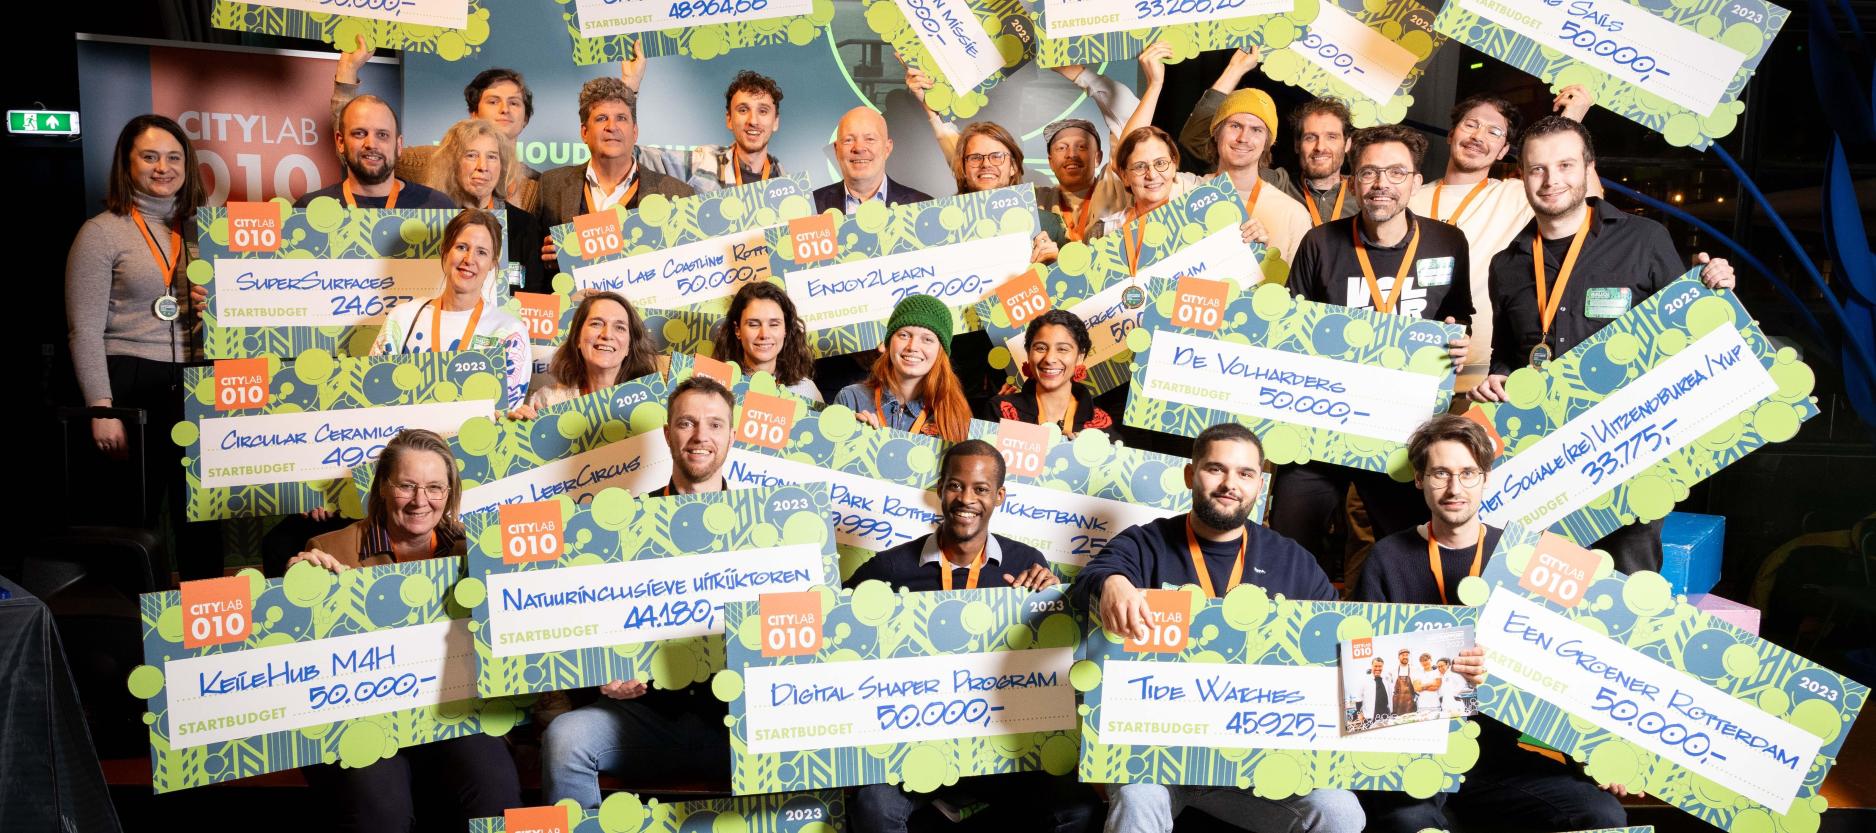 groepsfoto van lachende Rotterdamse initiatiefnemers met cheque in de hand, met daarop het startbedrag voor hun initiatief